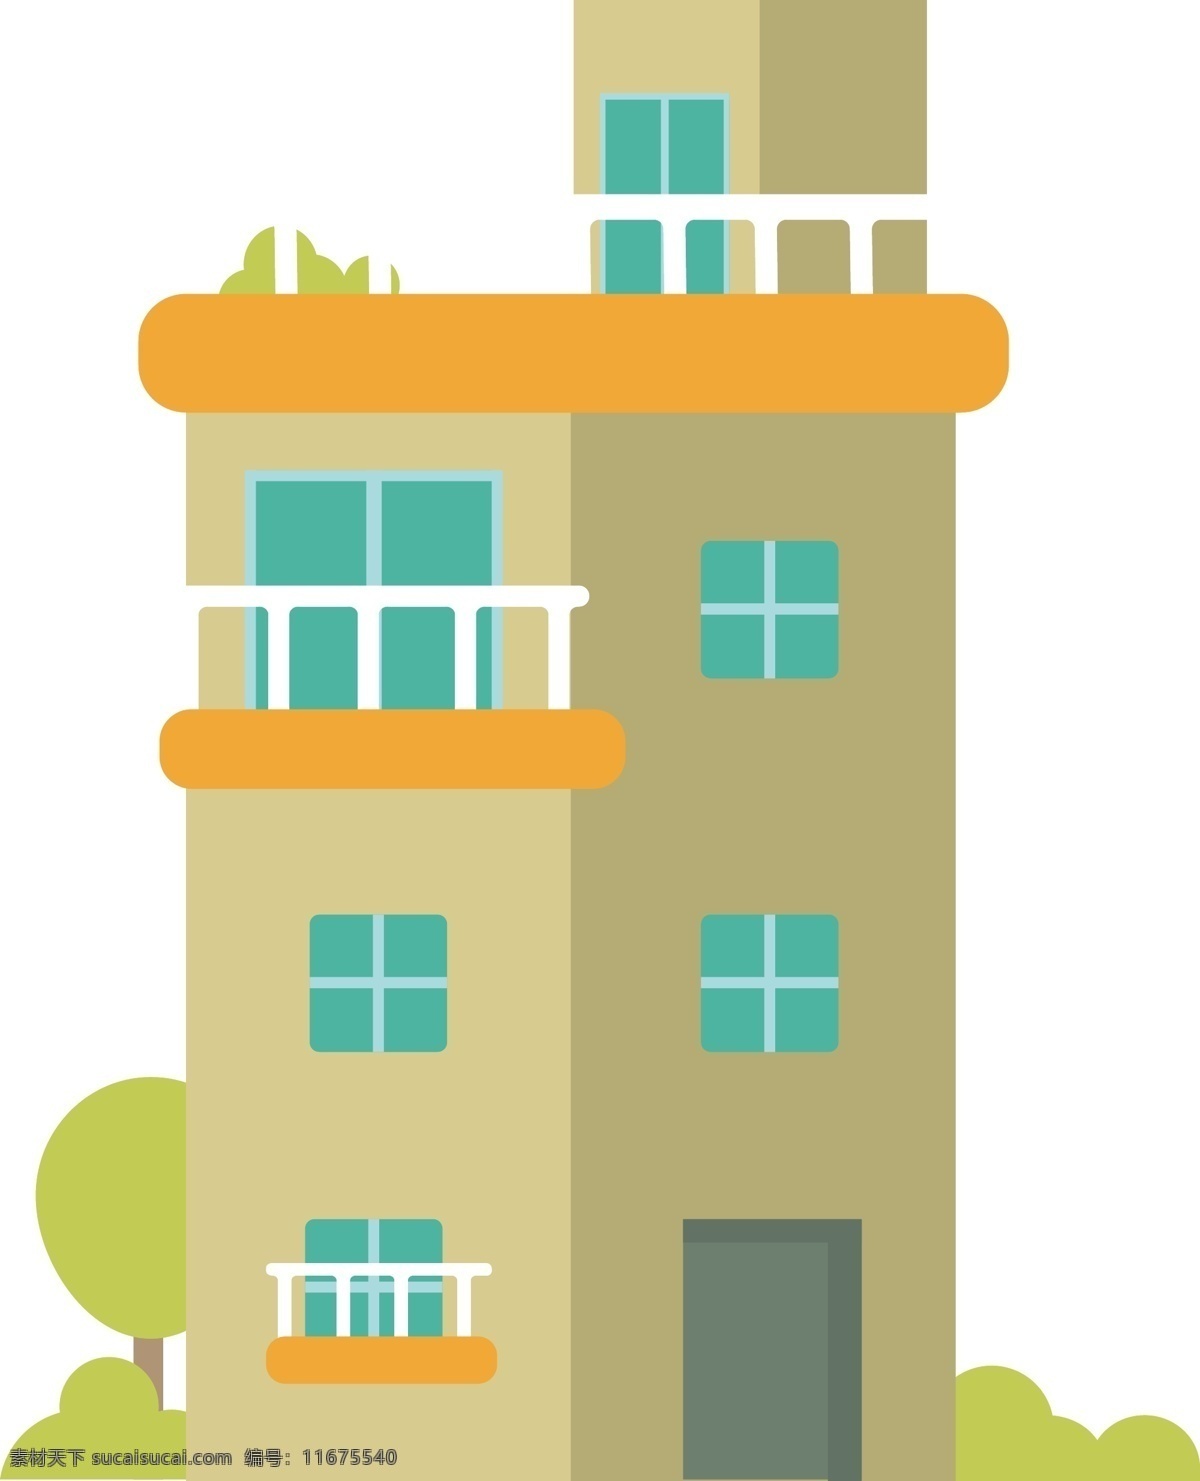 三 层 公寓 小楼 房屋 图标 三层公寓 房子 橙色 撞色 窗户 门 建筑 烟囱 房子图标 矢量 矢量房屋 绿化 植物